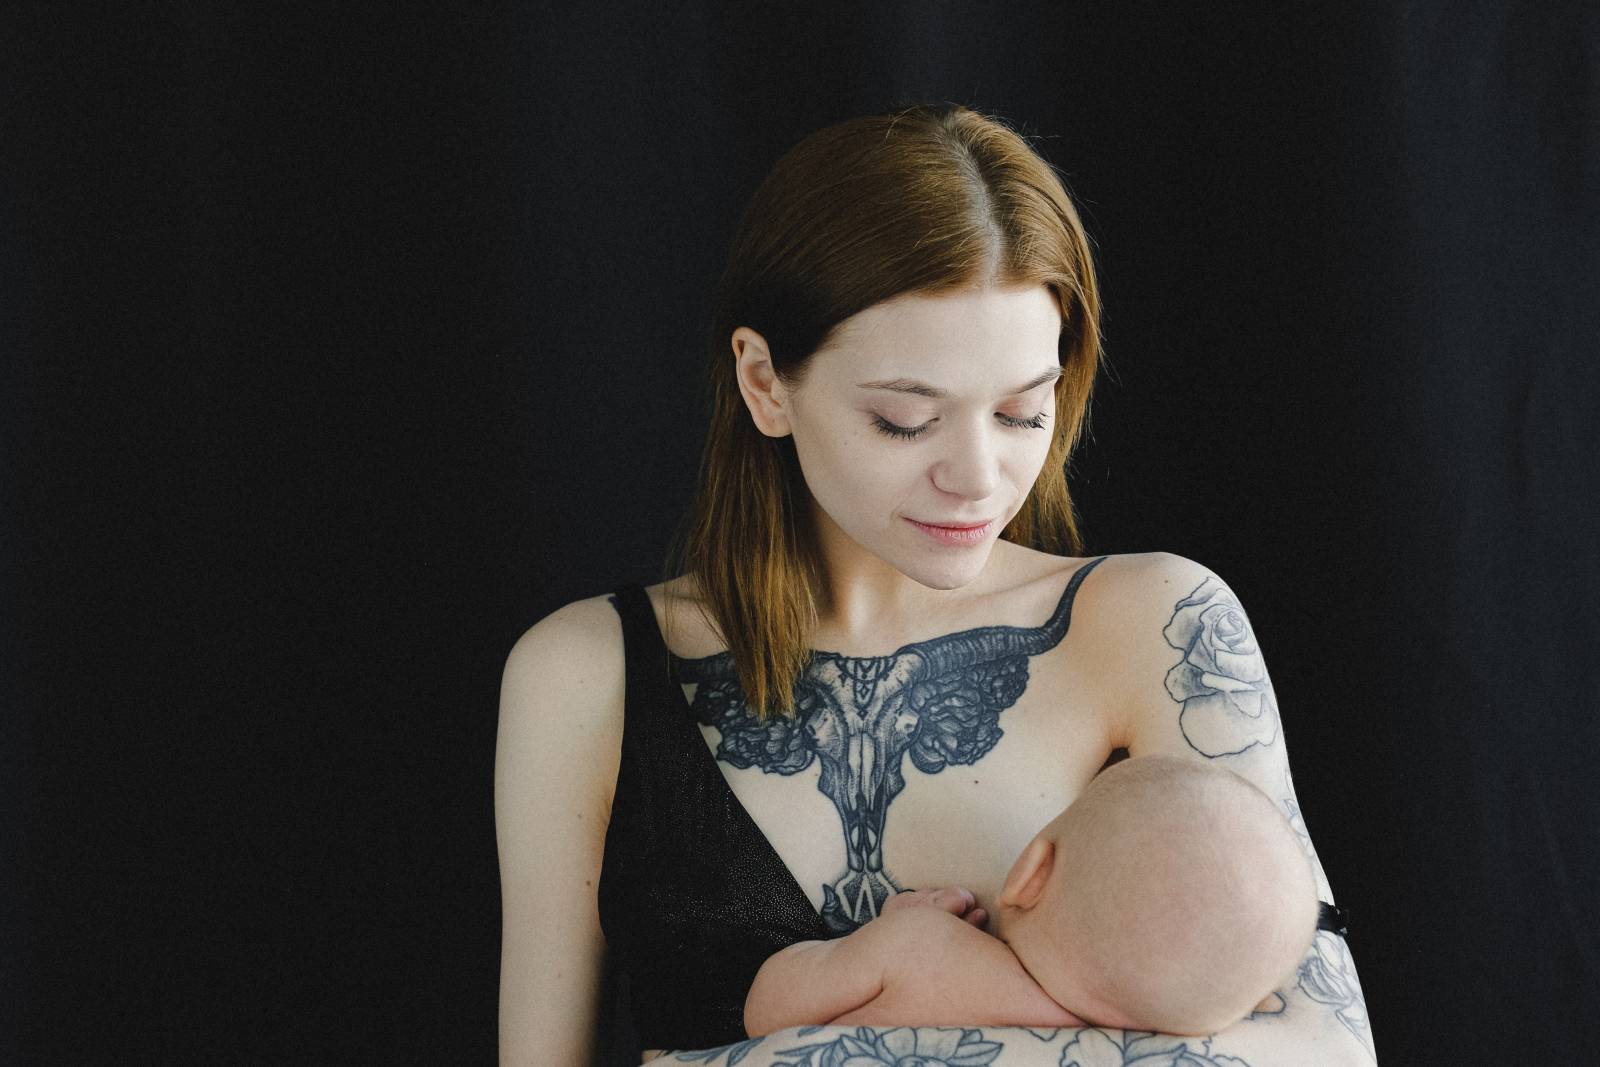 Äiti imettää vauvaa./mother breastfeeding baby